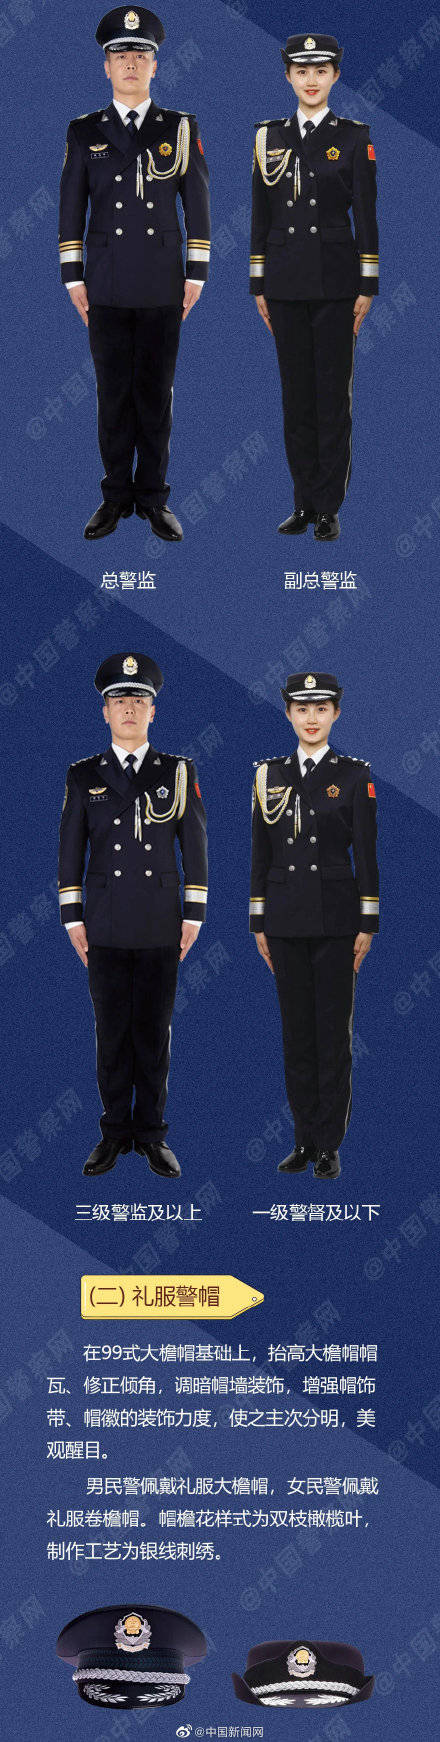 飒!中国人民警察警礼服正式列装